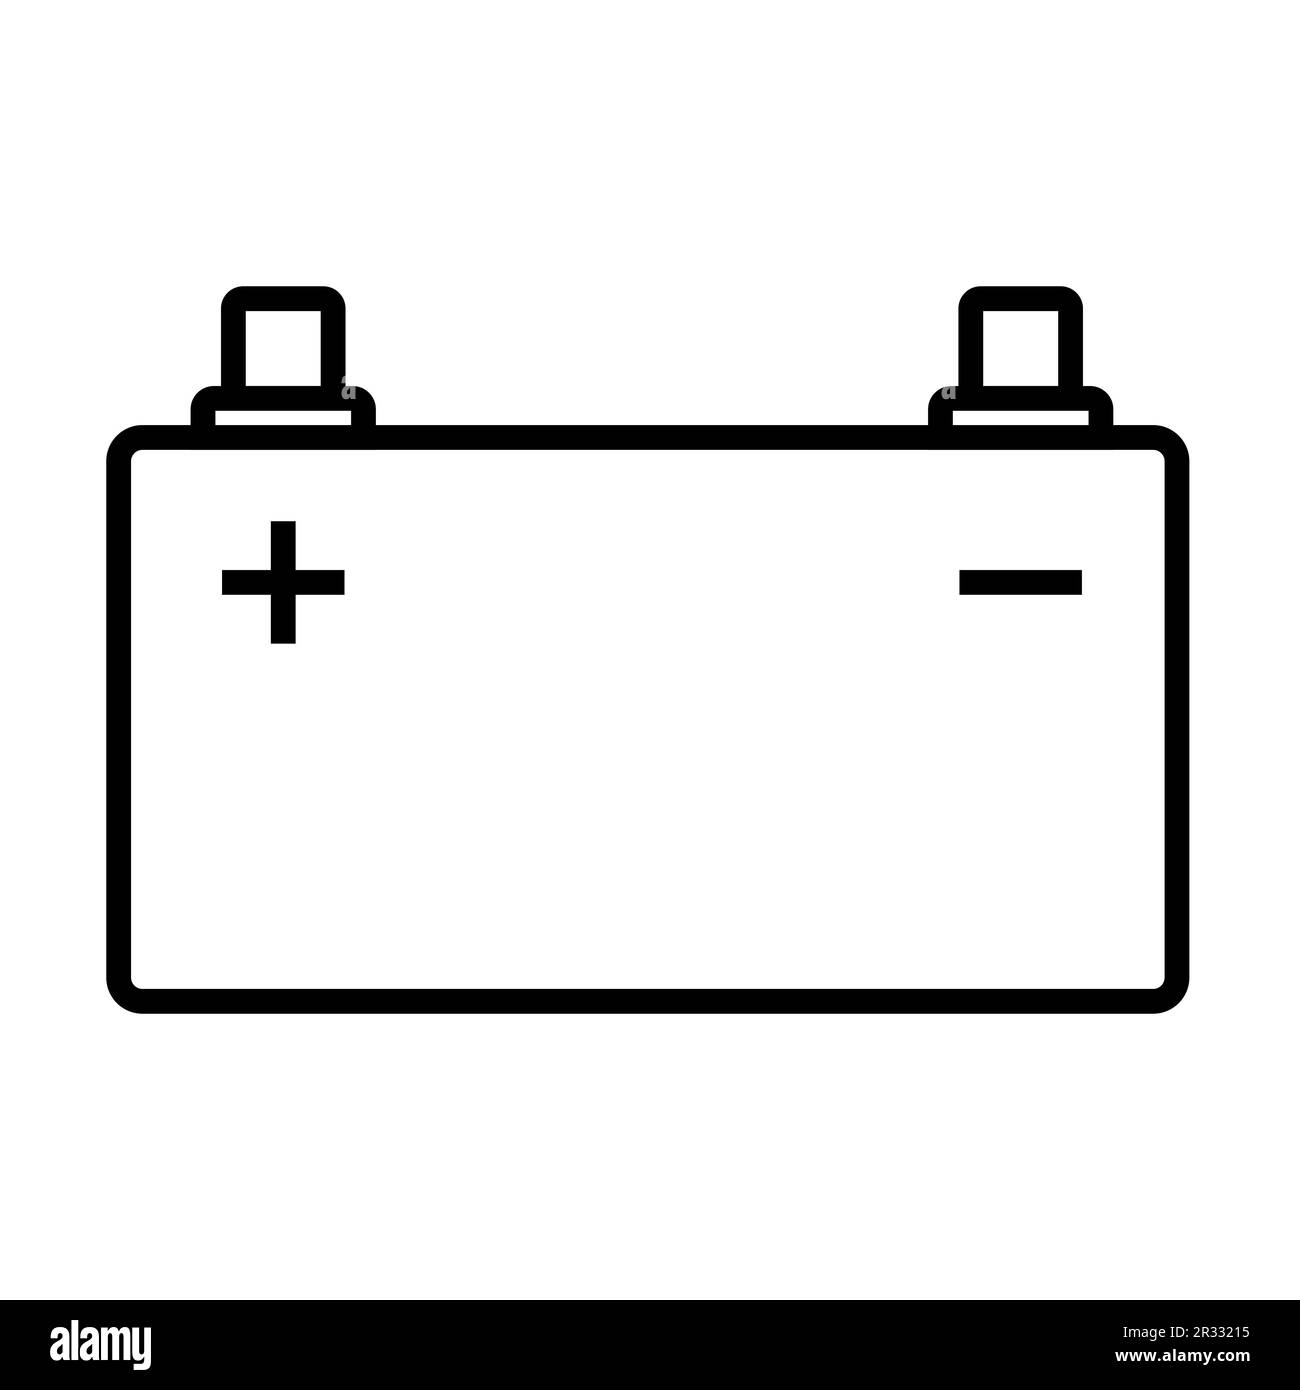 Icona vettoriale della batteria per auto per design grafico, logo, sito Web, social media, app mobile, Illustrazione dell'interfaccia utente Illustrazione Vettoriale